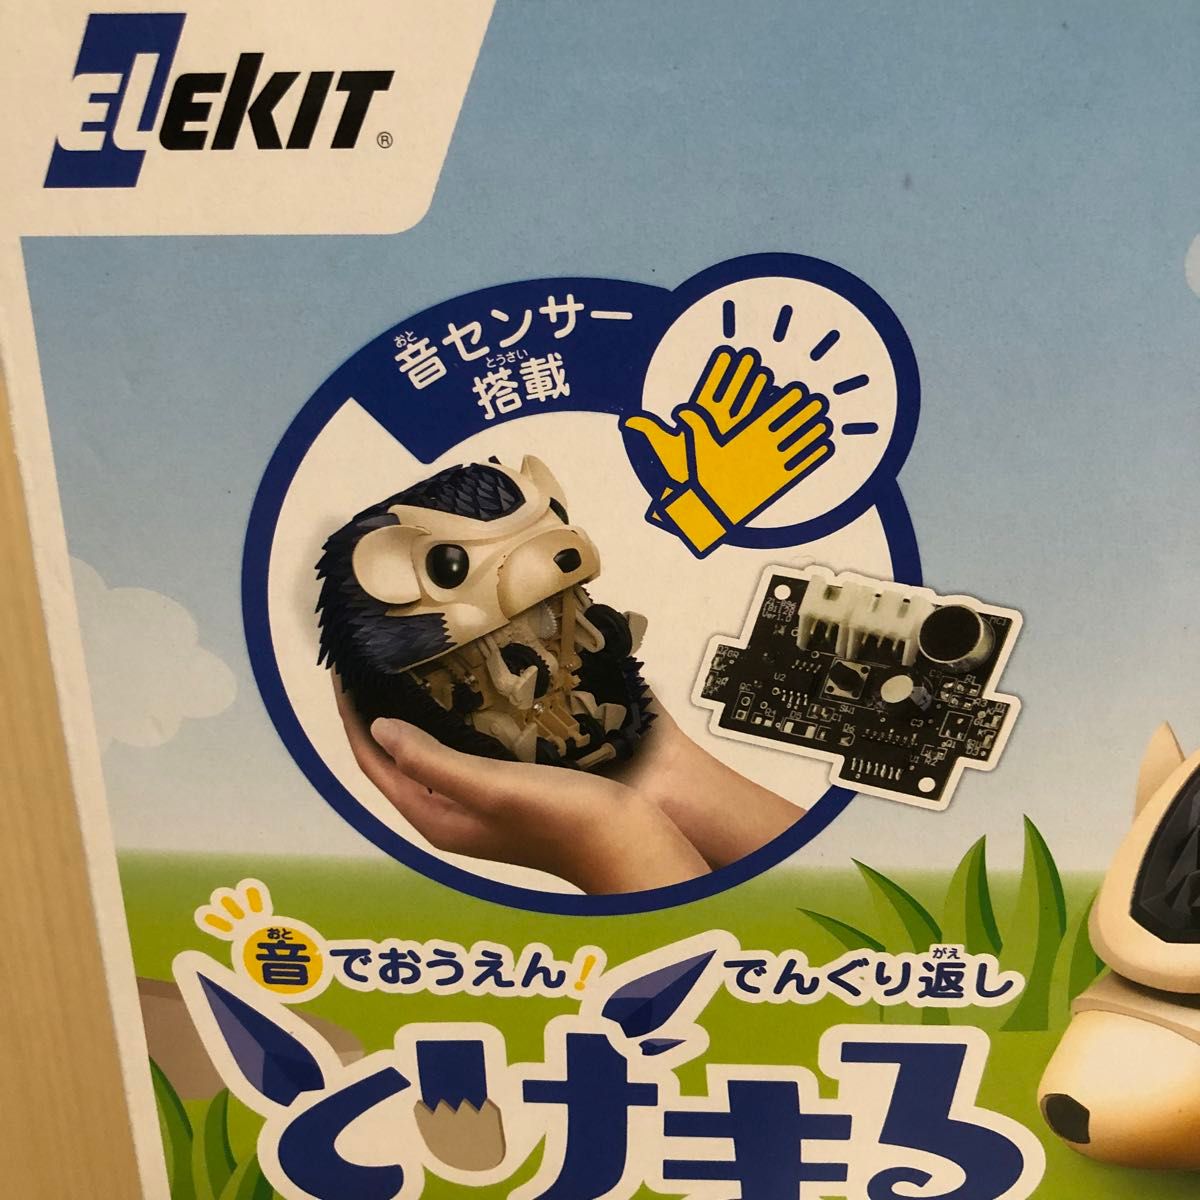 エレキット とげまる MR-9108 音でおうえん!でんぐり返し ELEKIT イーケイジャパン 工作キット ロボット